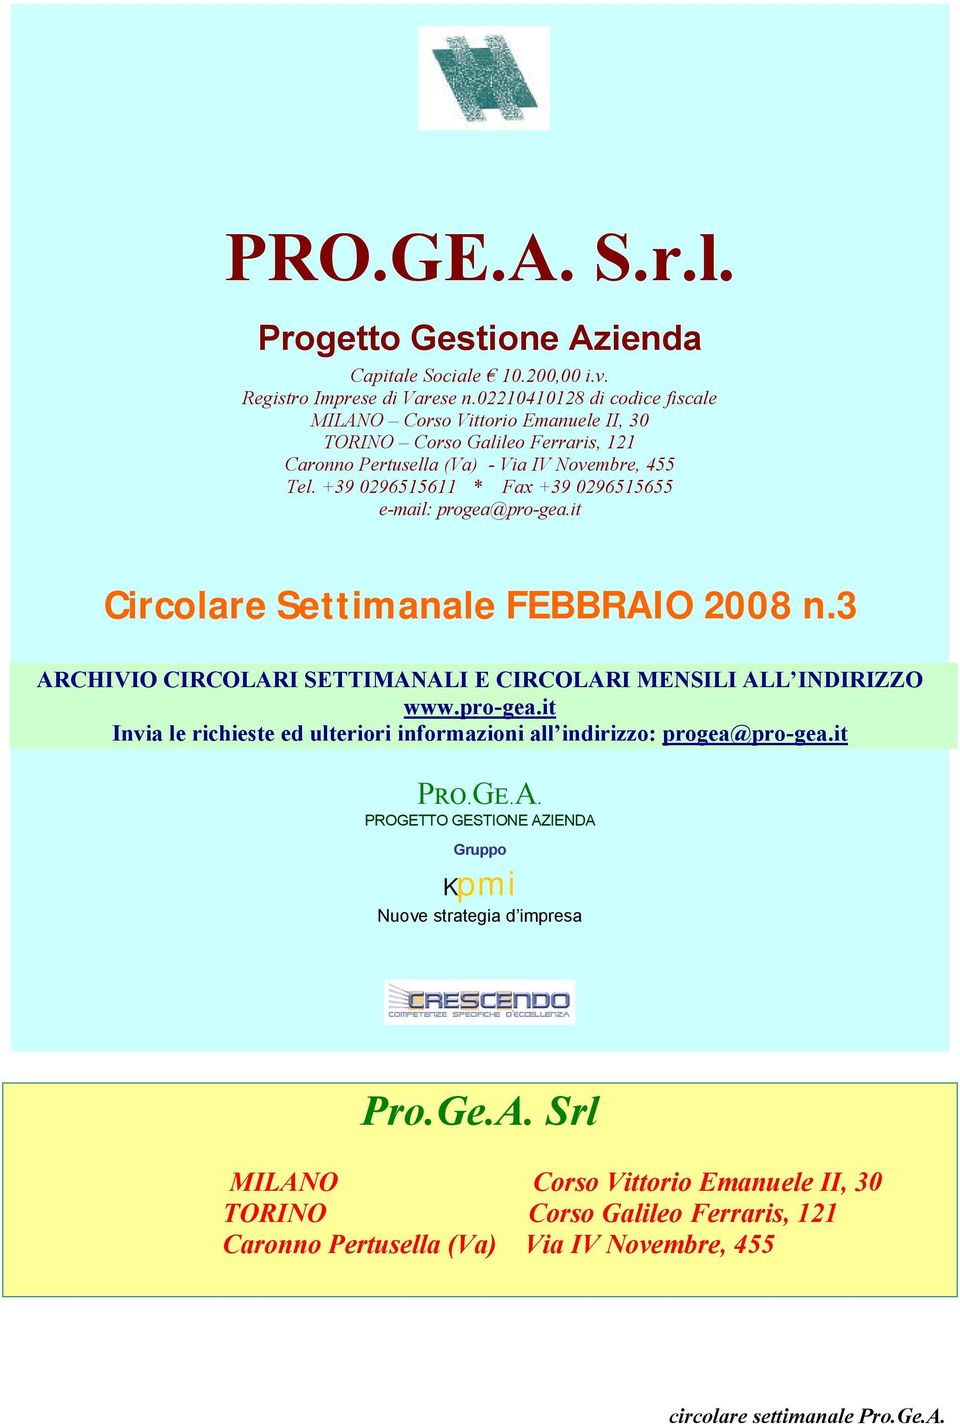 +39 0296515611 * Fax +39 0296515655 e-mail: progea@pro-gea.it Circolare Settimanale FEBBRAIO 2008 n.3 ARCHIVIO CIRCOLARI SETTIMANALI E CIRCOLARI MENSILI ALL INDIRIZZO www.pro-gea.it Invia le richieste ed ulteriori informazioni all indirizzo: progea@pro-gea.